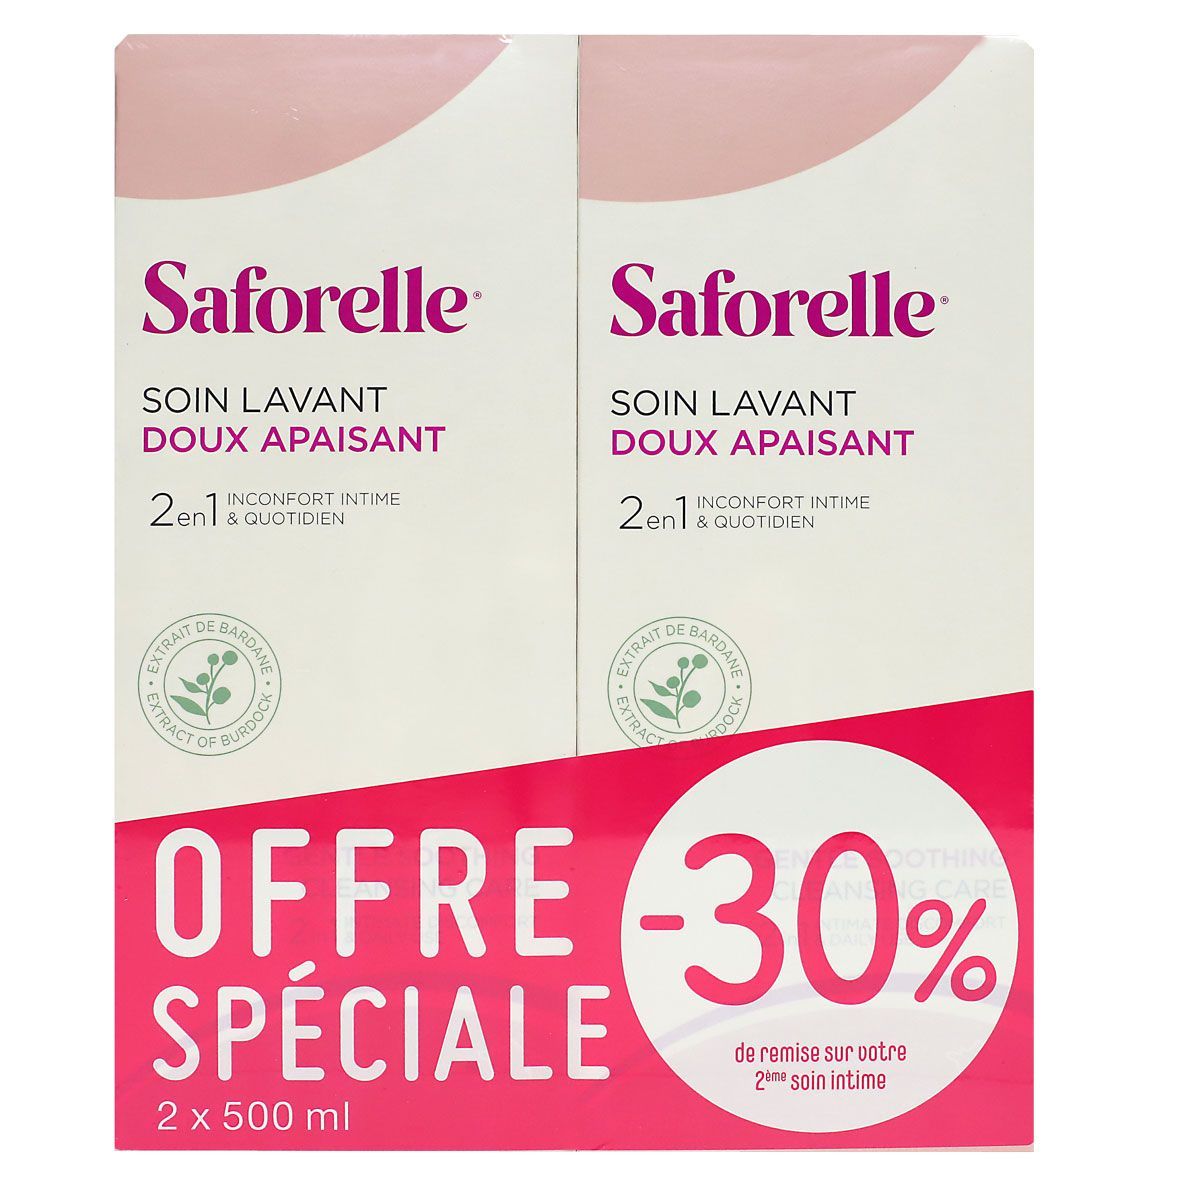 Saforelle soin lavant doux : Achat de savon Saforelle en ligne